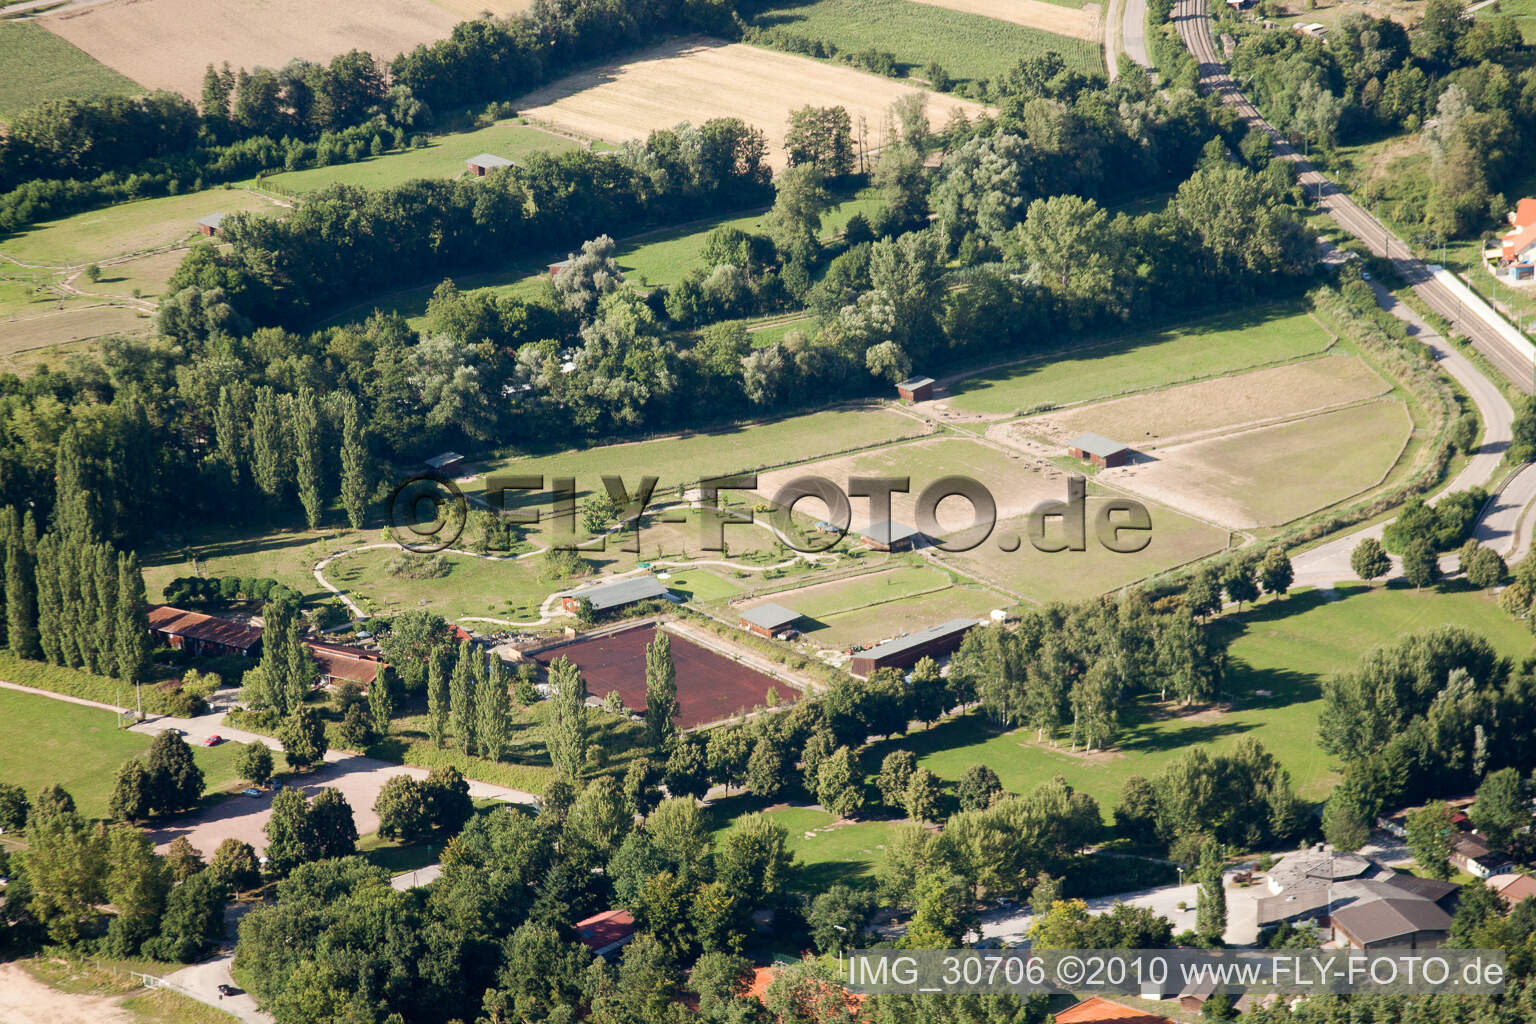 Vue aérienne de Ferme d'autruches de Mhou à Rülzheim dans le département Rhénanie-Palatinat, Allemagne